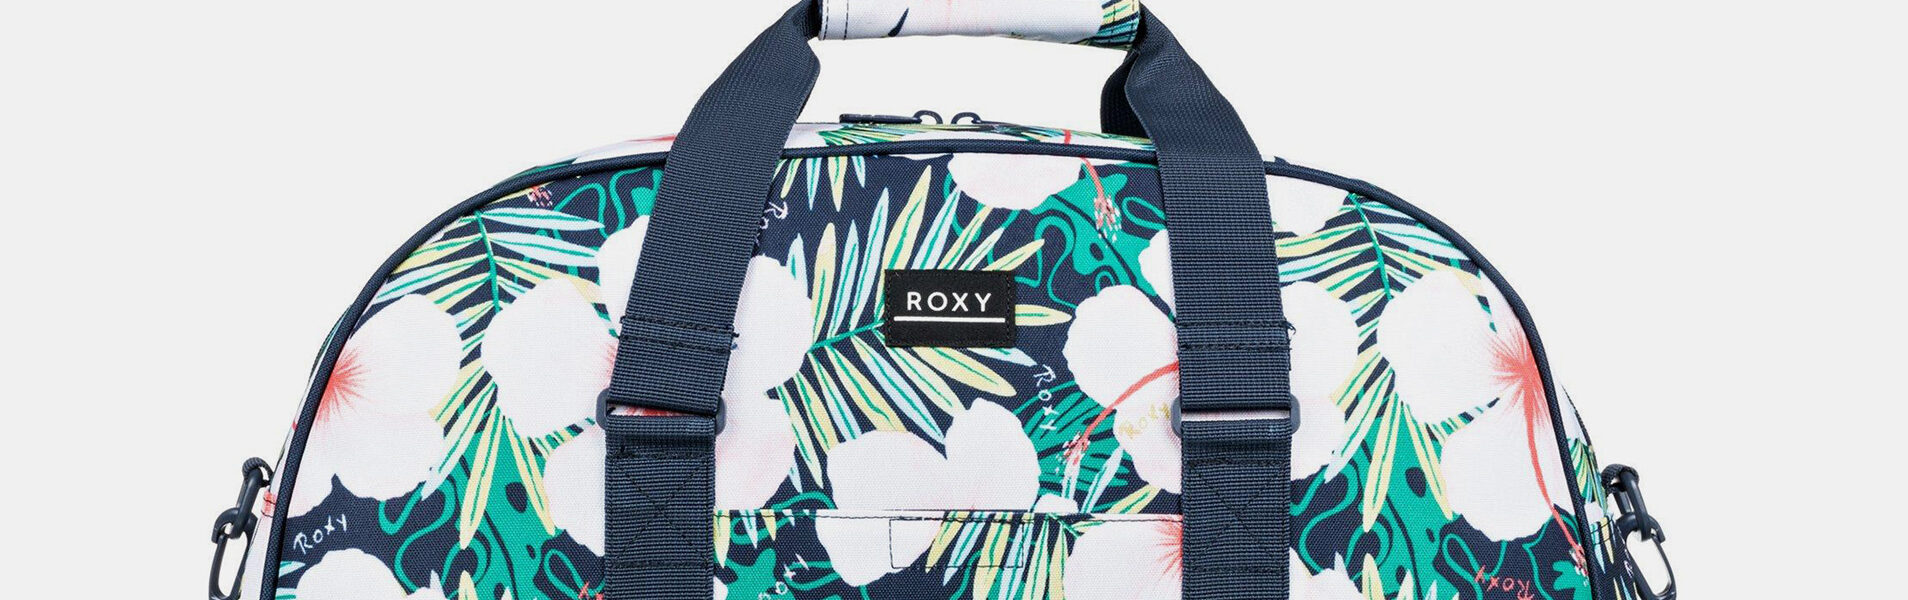 Tmavomodrá kvetovaná cestovná taška Roxy